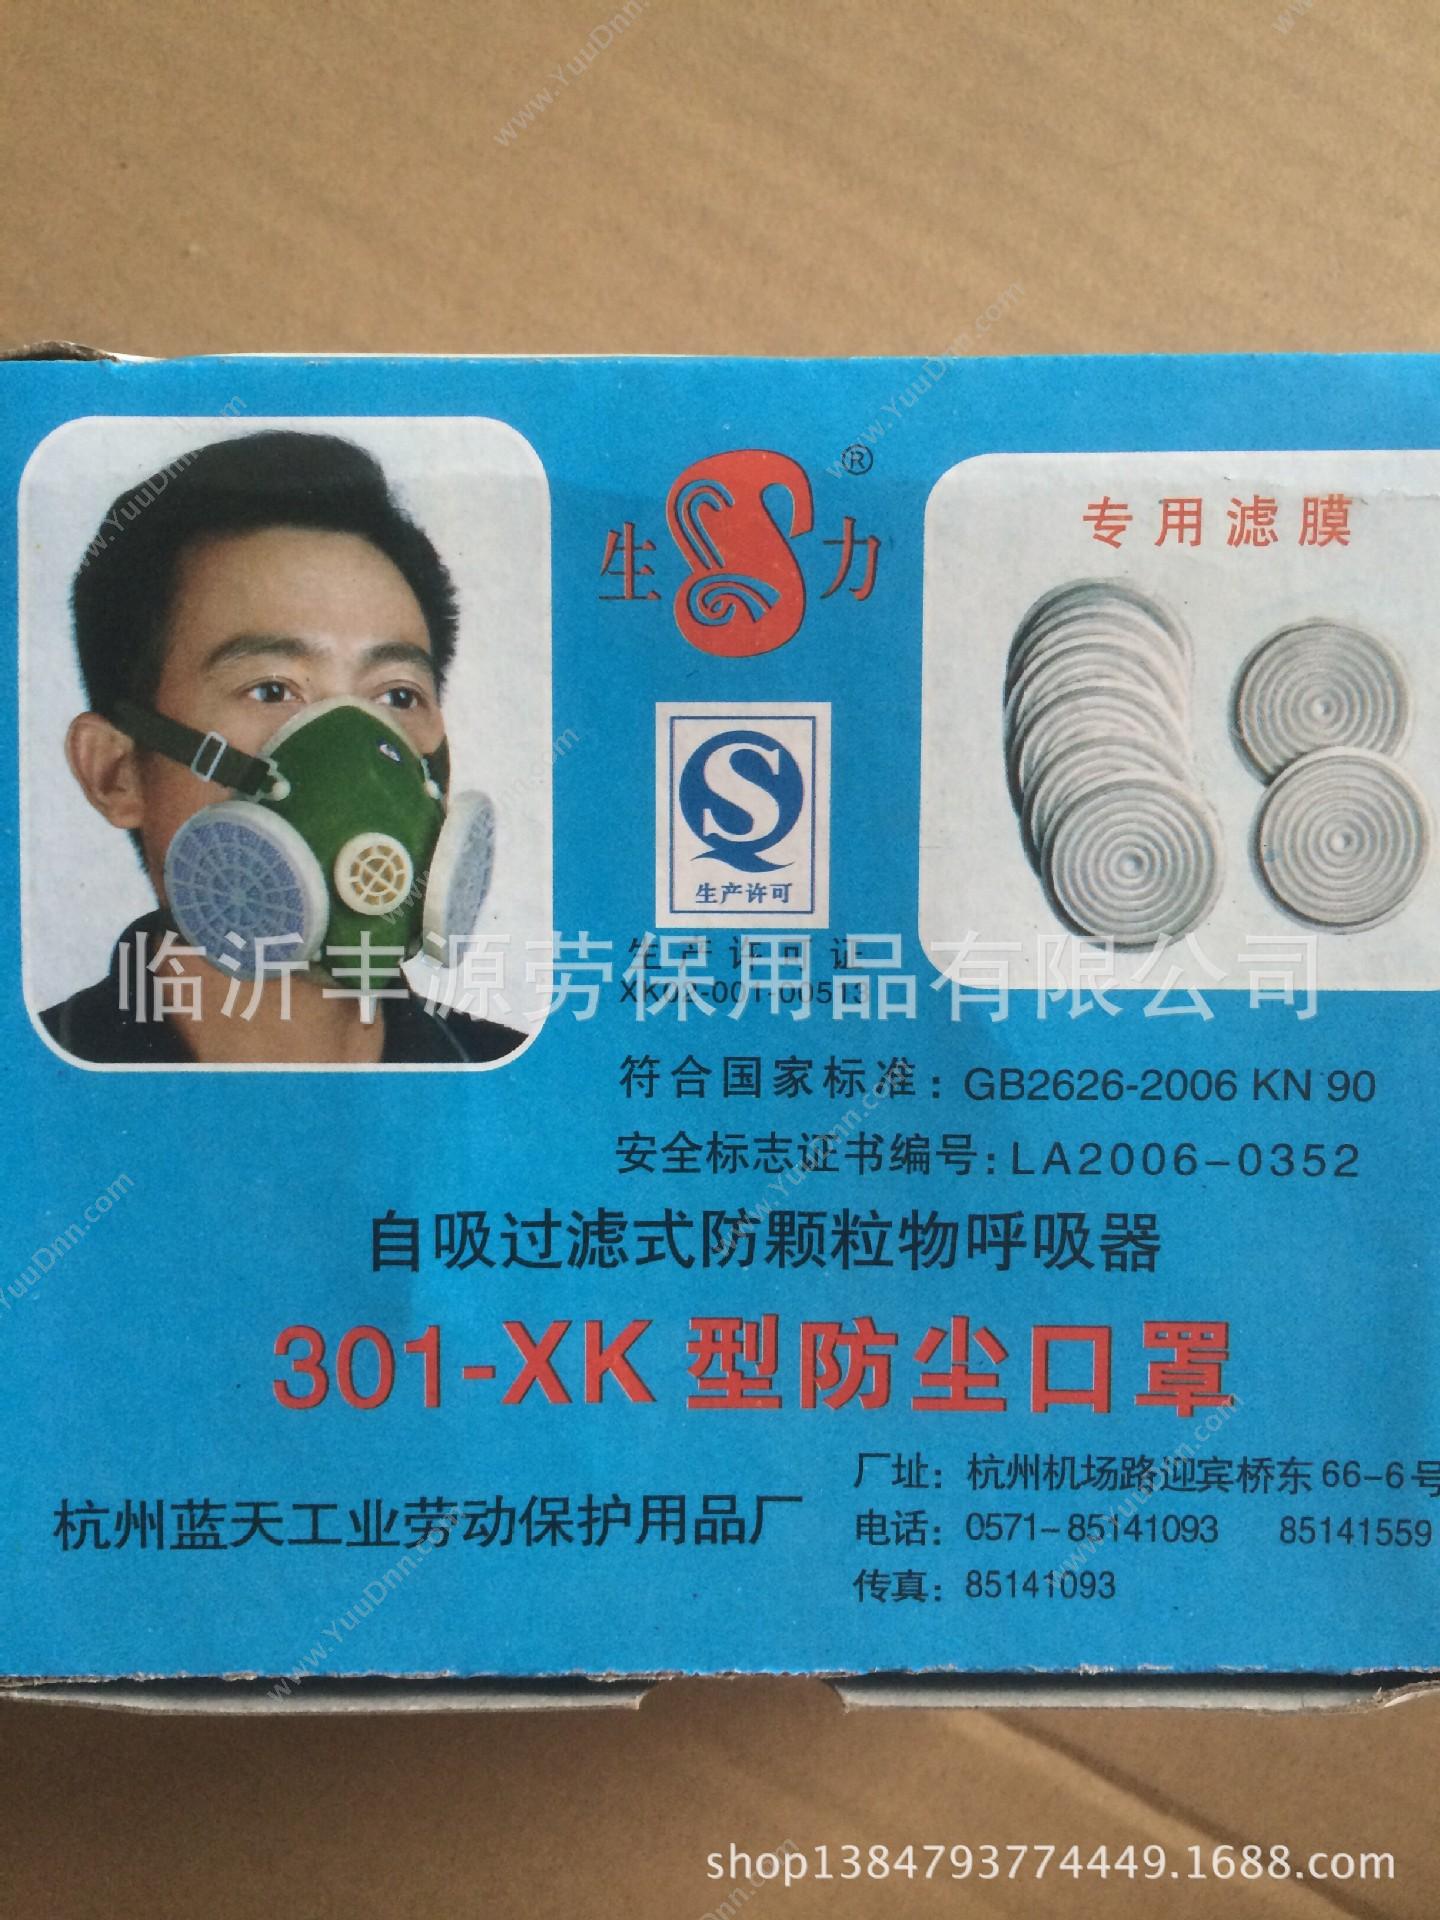 生力 301-XK 防尘口罩